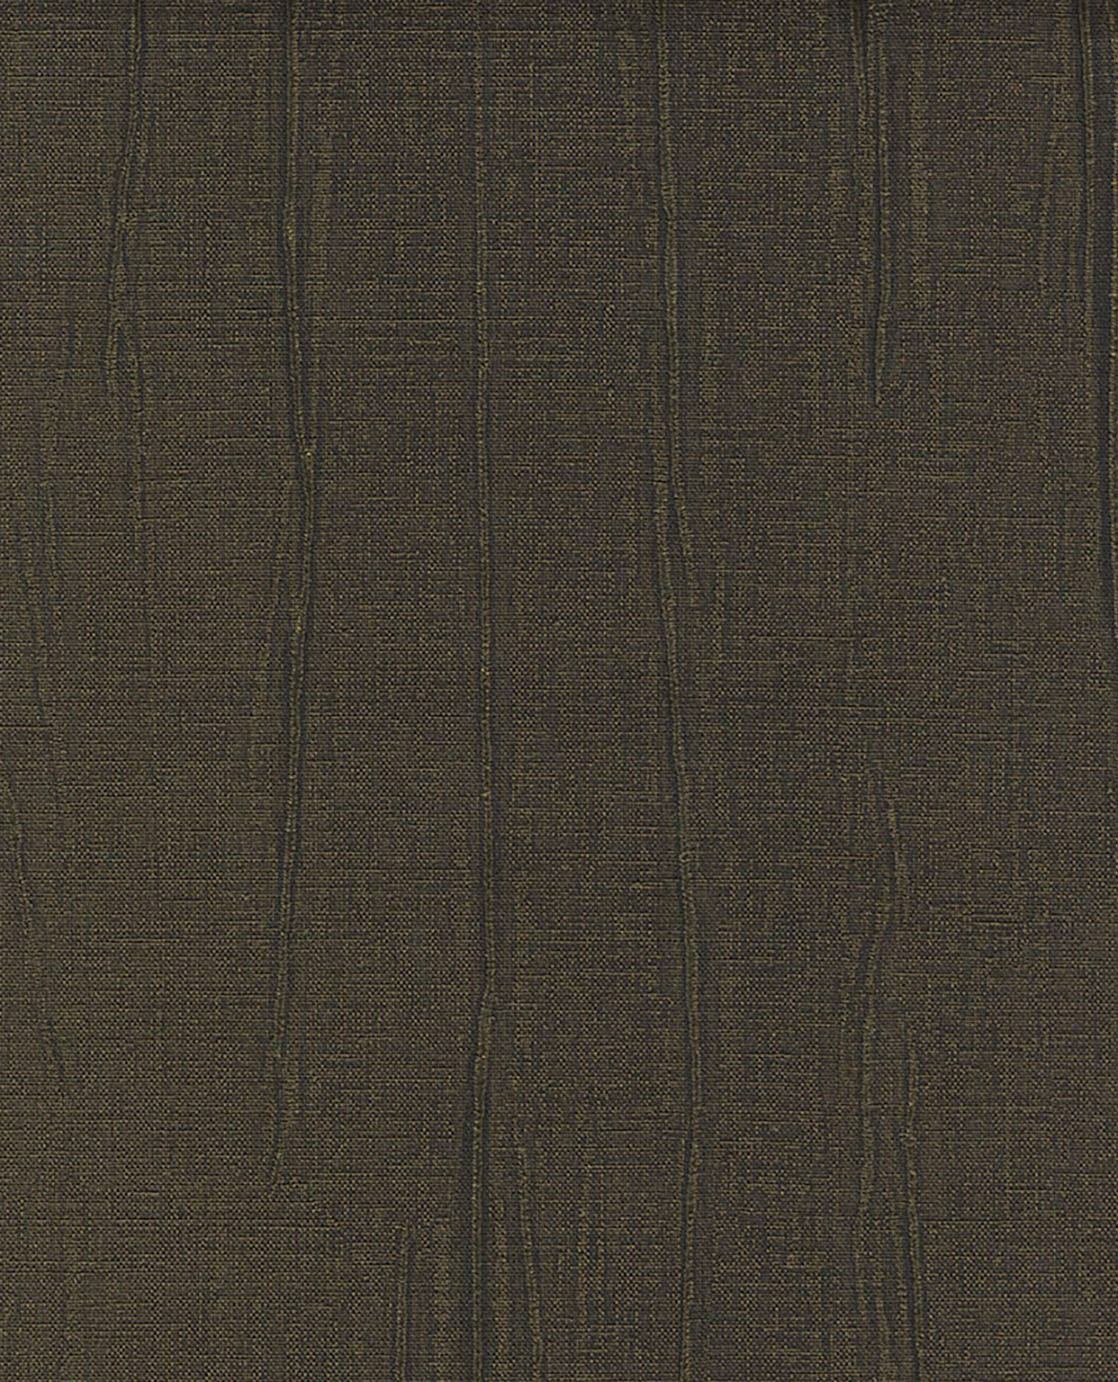 Wrinkled Textile - Black / Gold